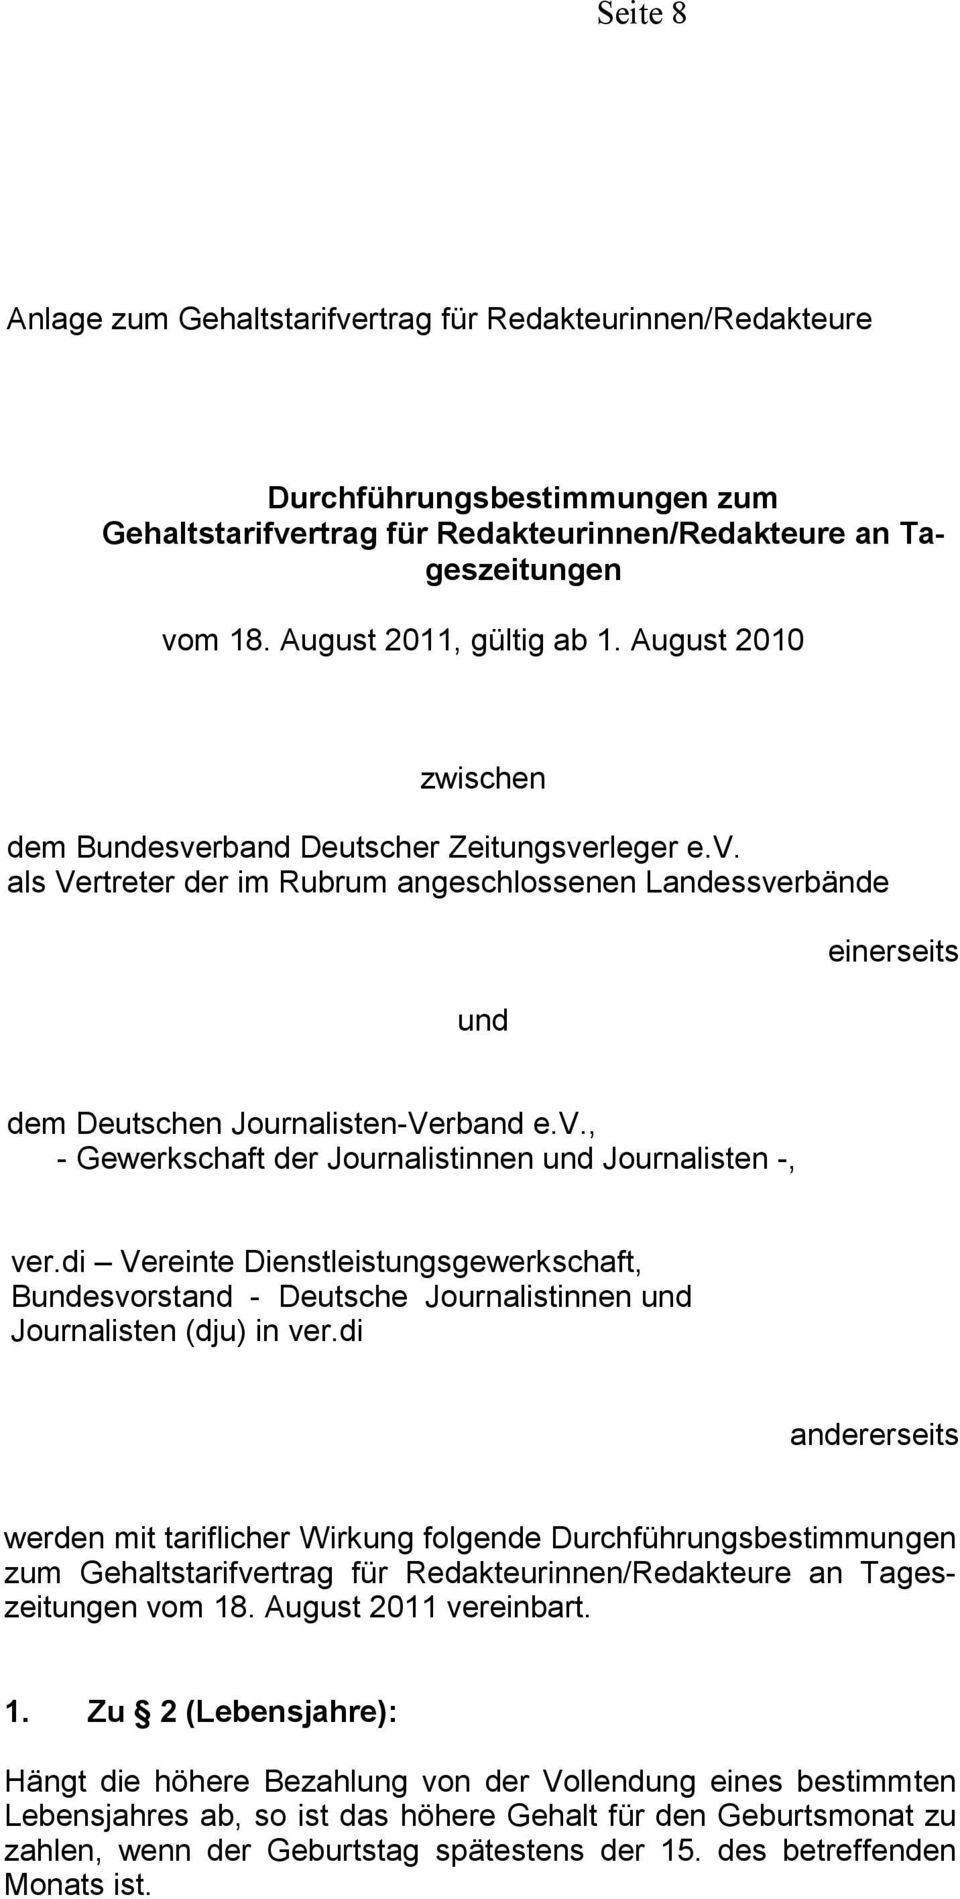 di Vereinte Dienstleistungsgewerkschaft, Bundesvorstand - Deutsche Journalistinnen und Journalisten (dju) in ver.